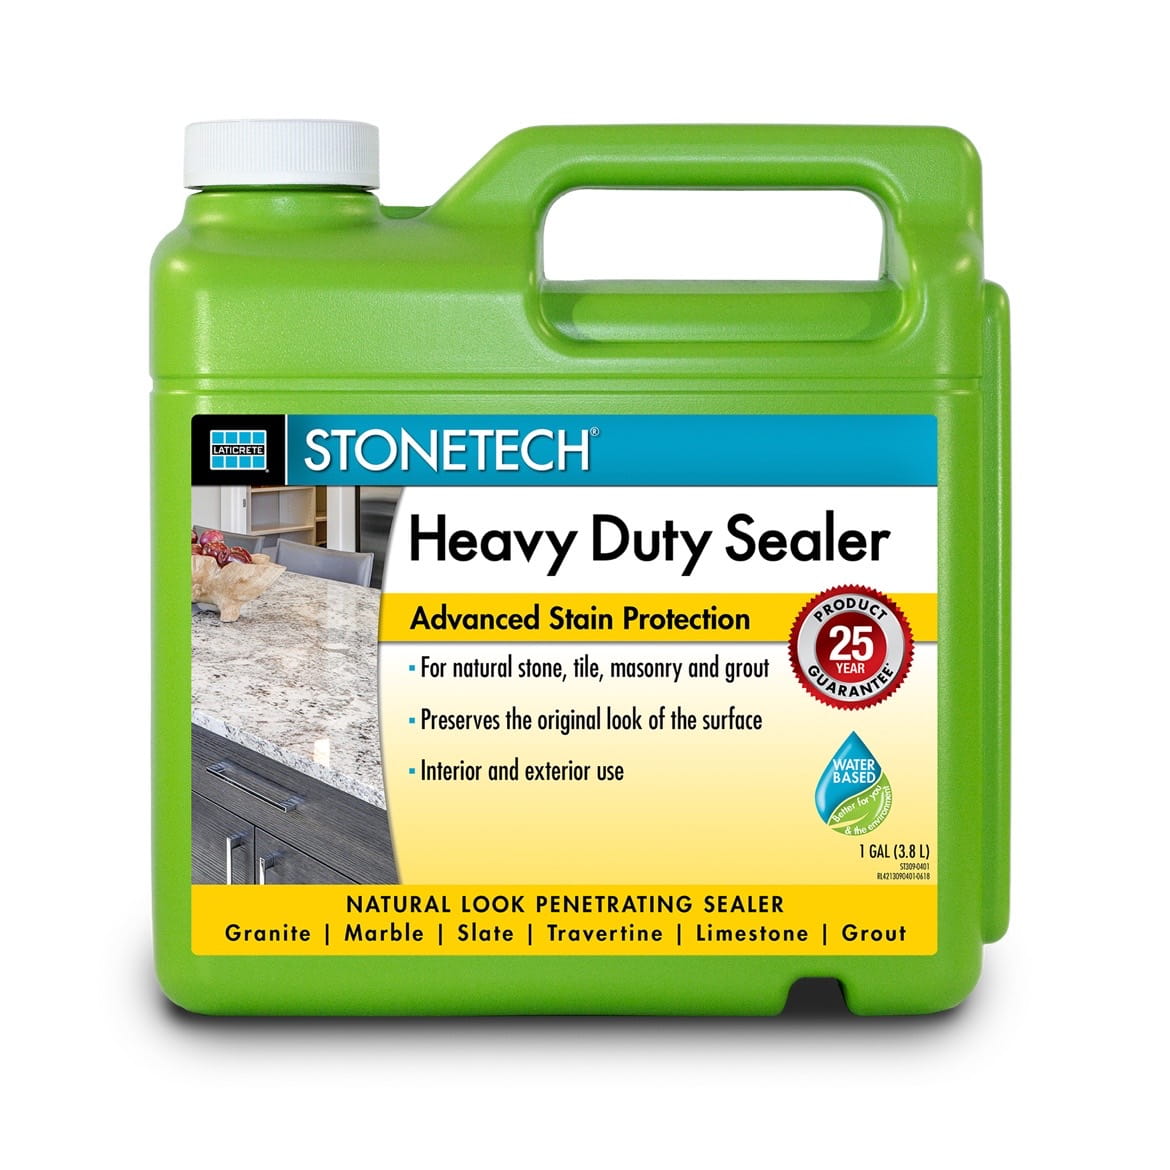 Stonetech heavy duty sealer